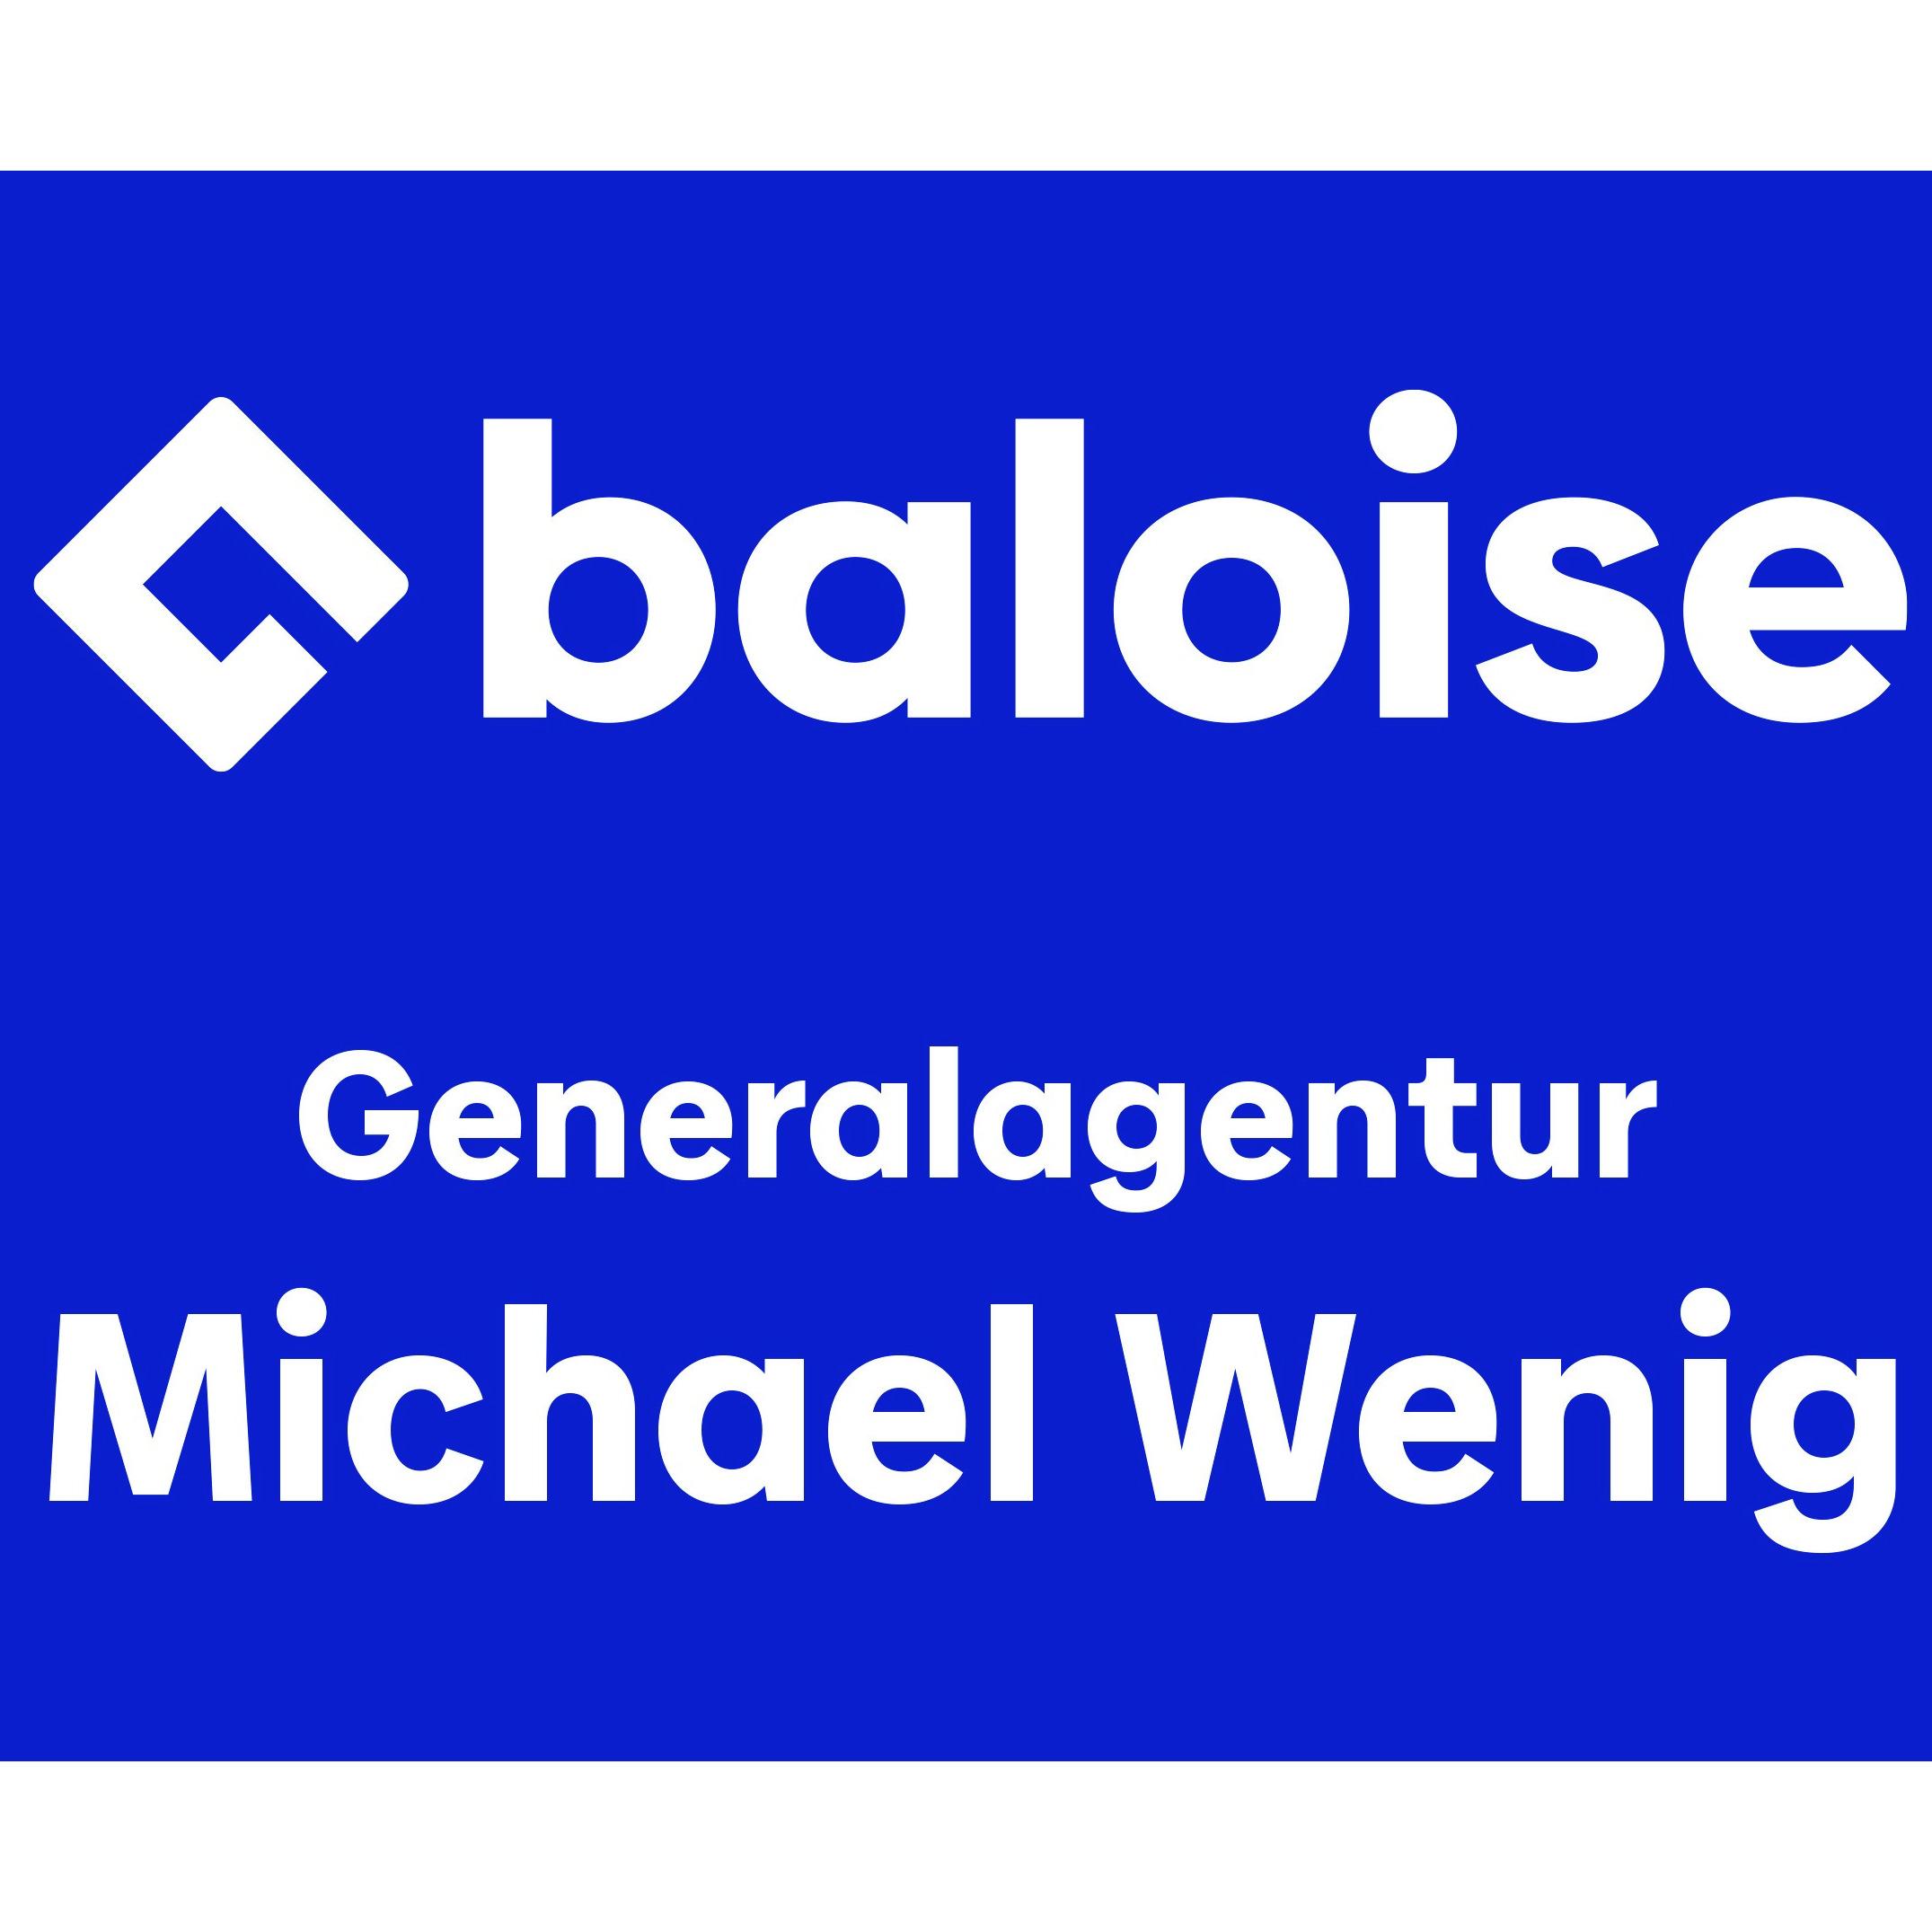 Baloise - Generalagentur Michael Wenig in Freiburg in Freiburg im Breisgau - Logo